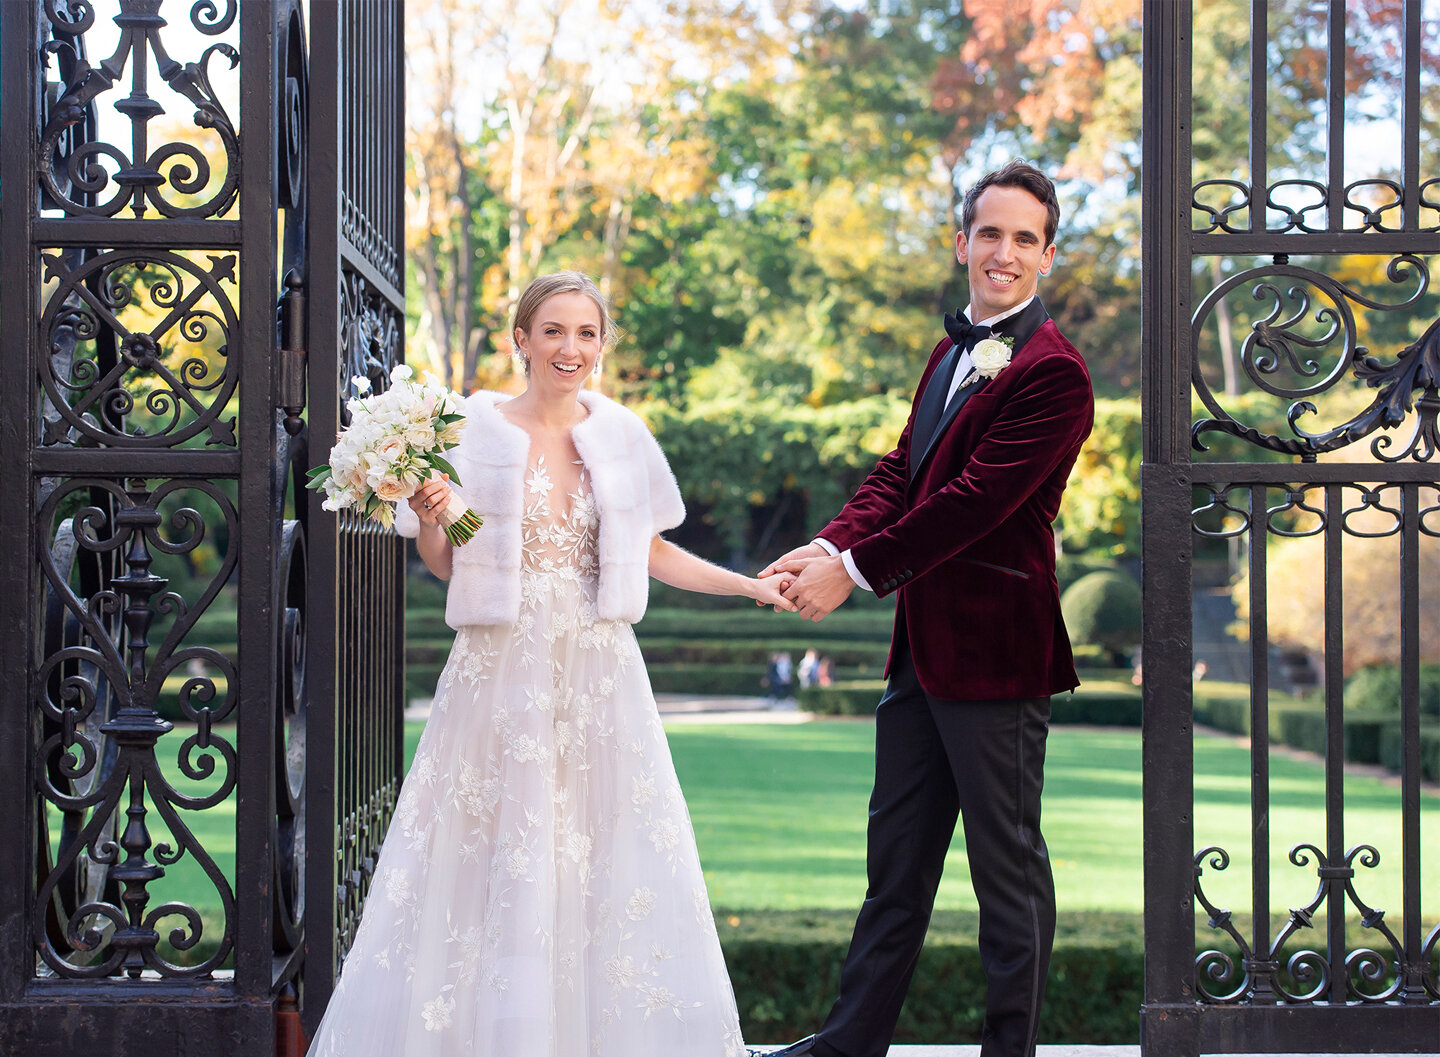 Bride and Groom at Vanderbilt Gate, Central Park